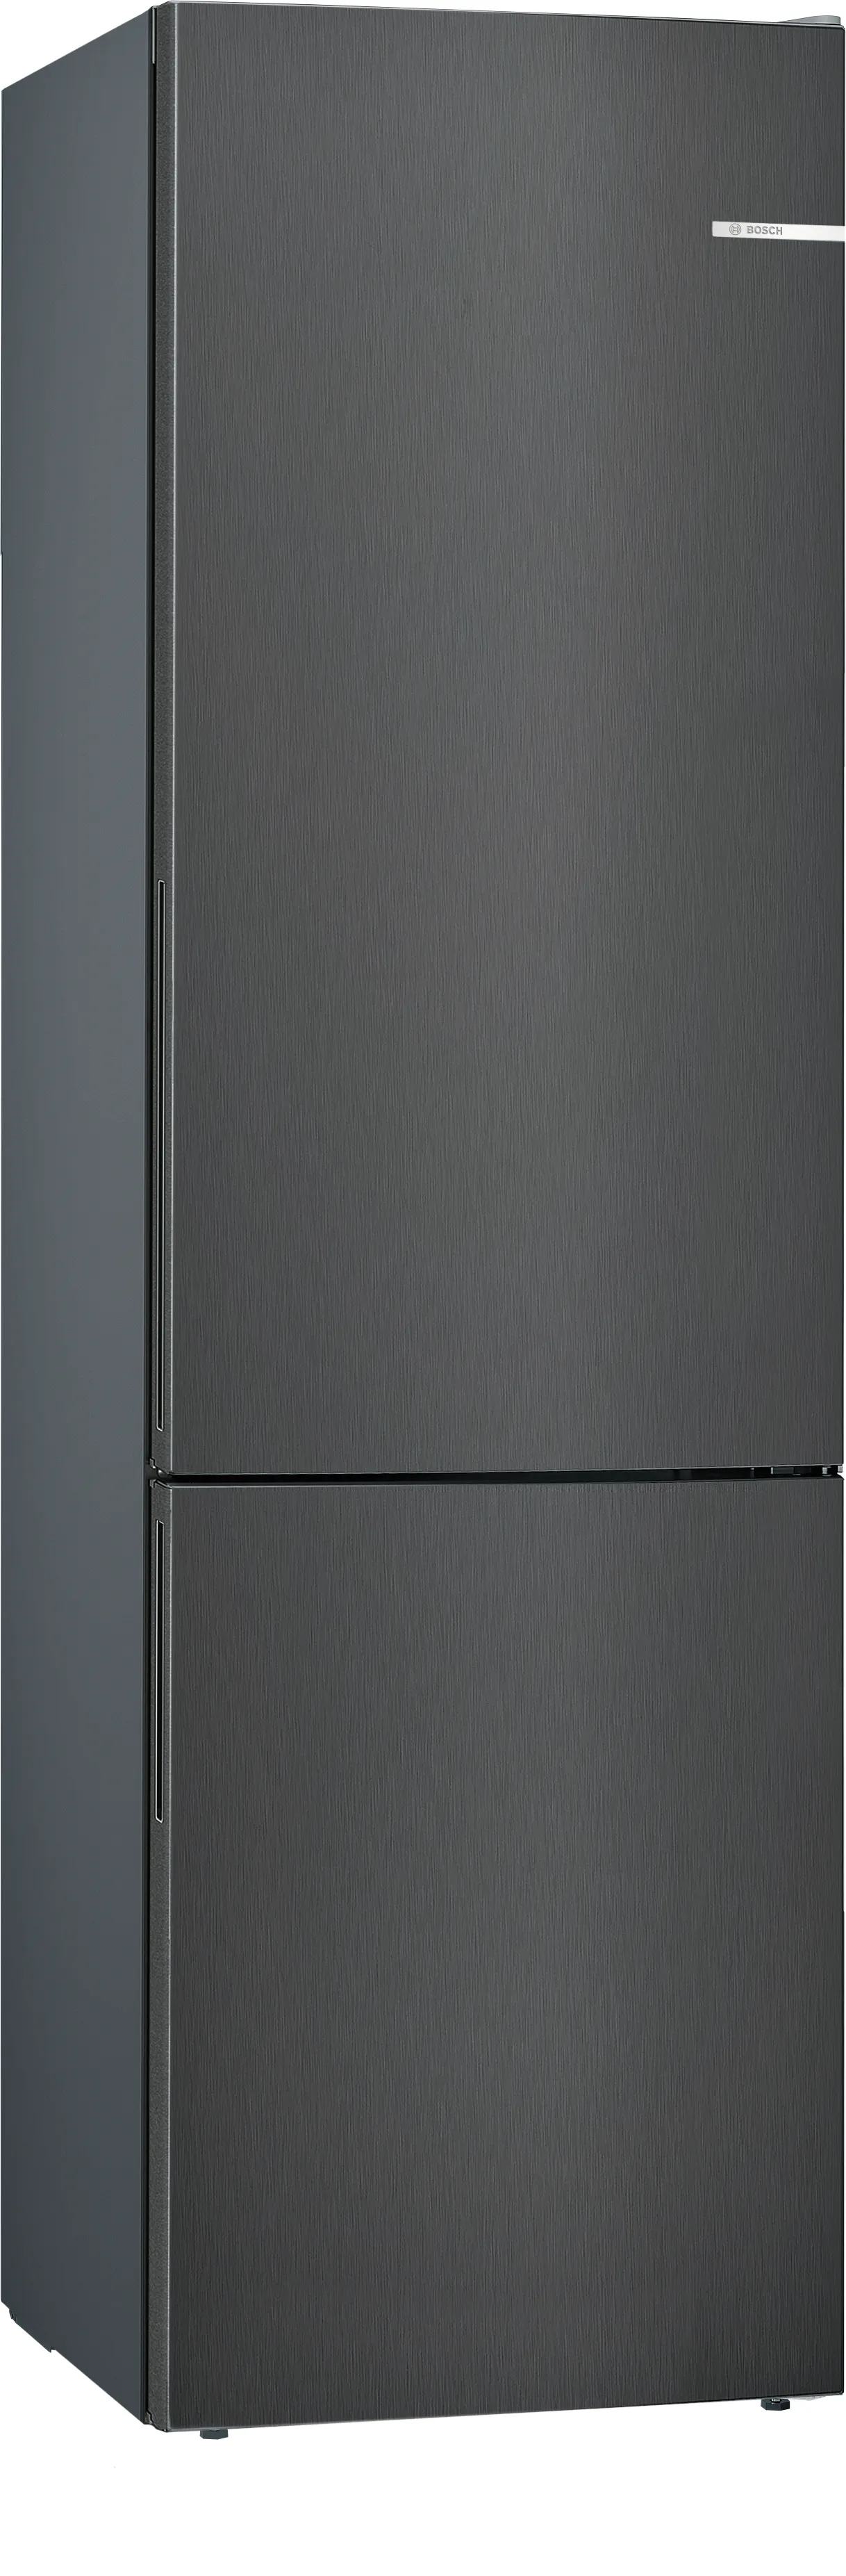 Serie 6 Volně stojící chladnička s mrazákem dole 201 x 60 cm Černý nerez 